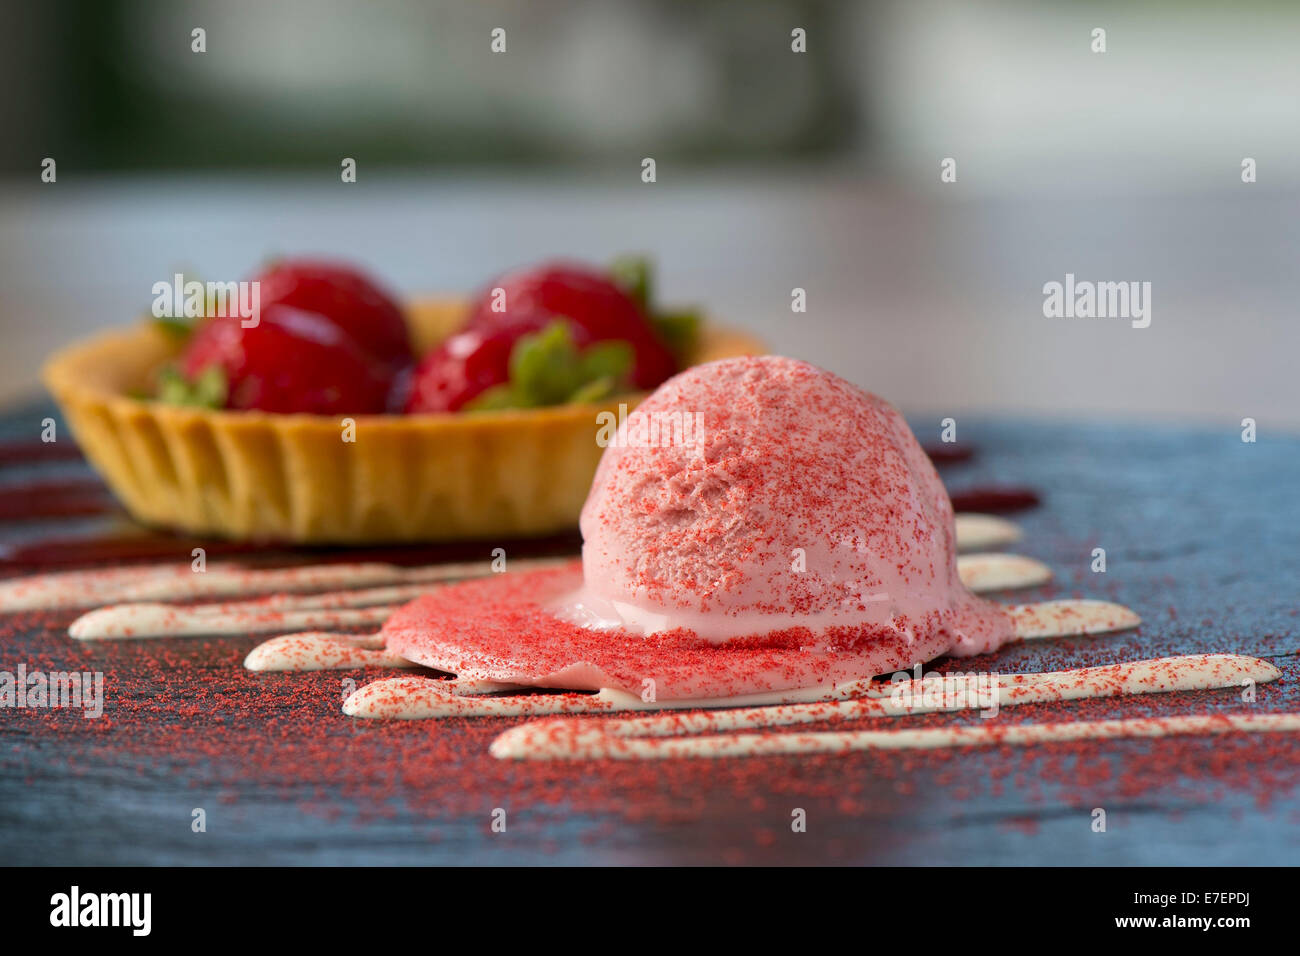 Gourmet-Melting Erdbeereis Dessert auf einer Schiefertafel Platte mit einer Schüssel Erdbeeren Stockfoto